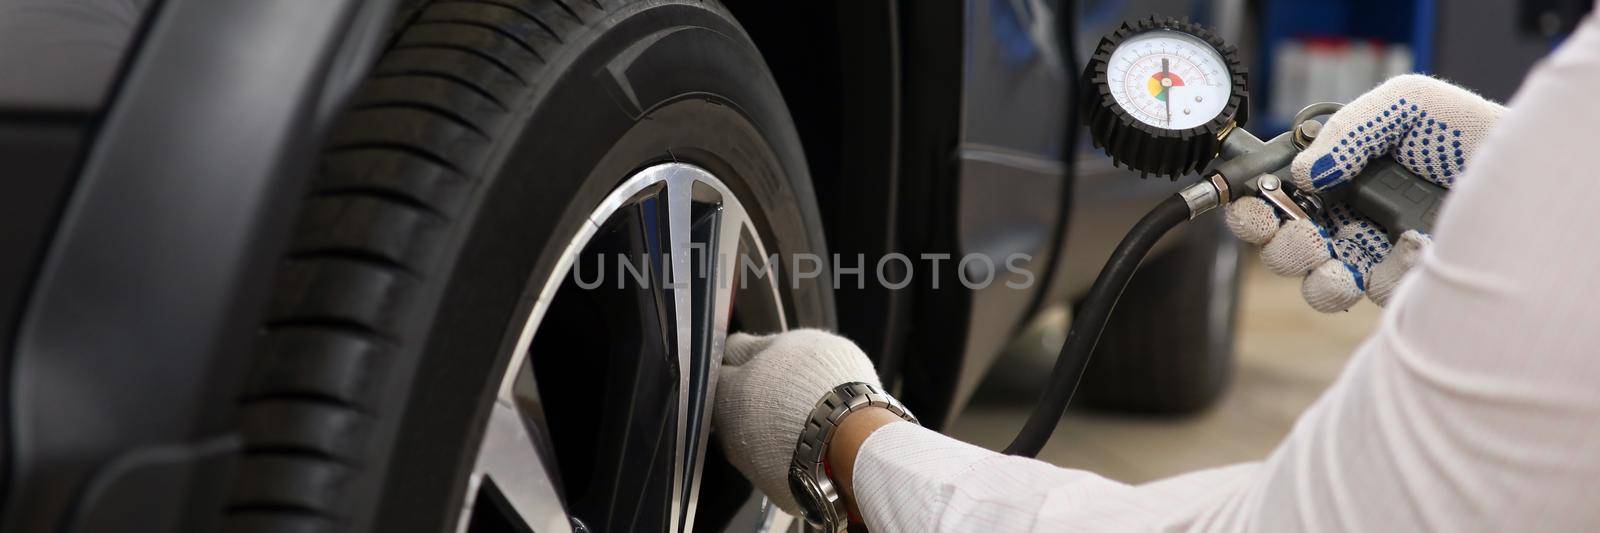 Technician checks tire pressure of car. Tire service concept